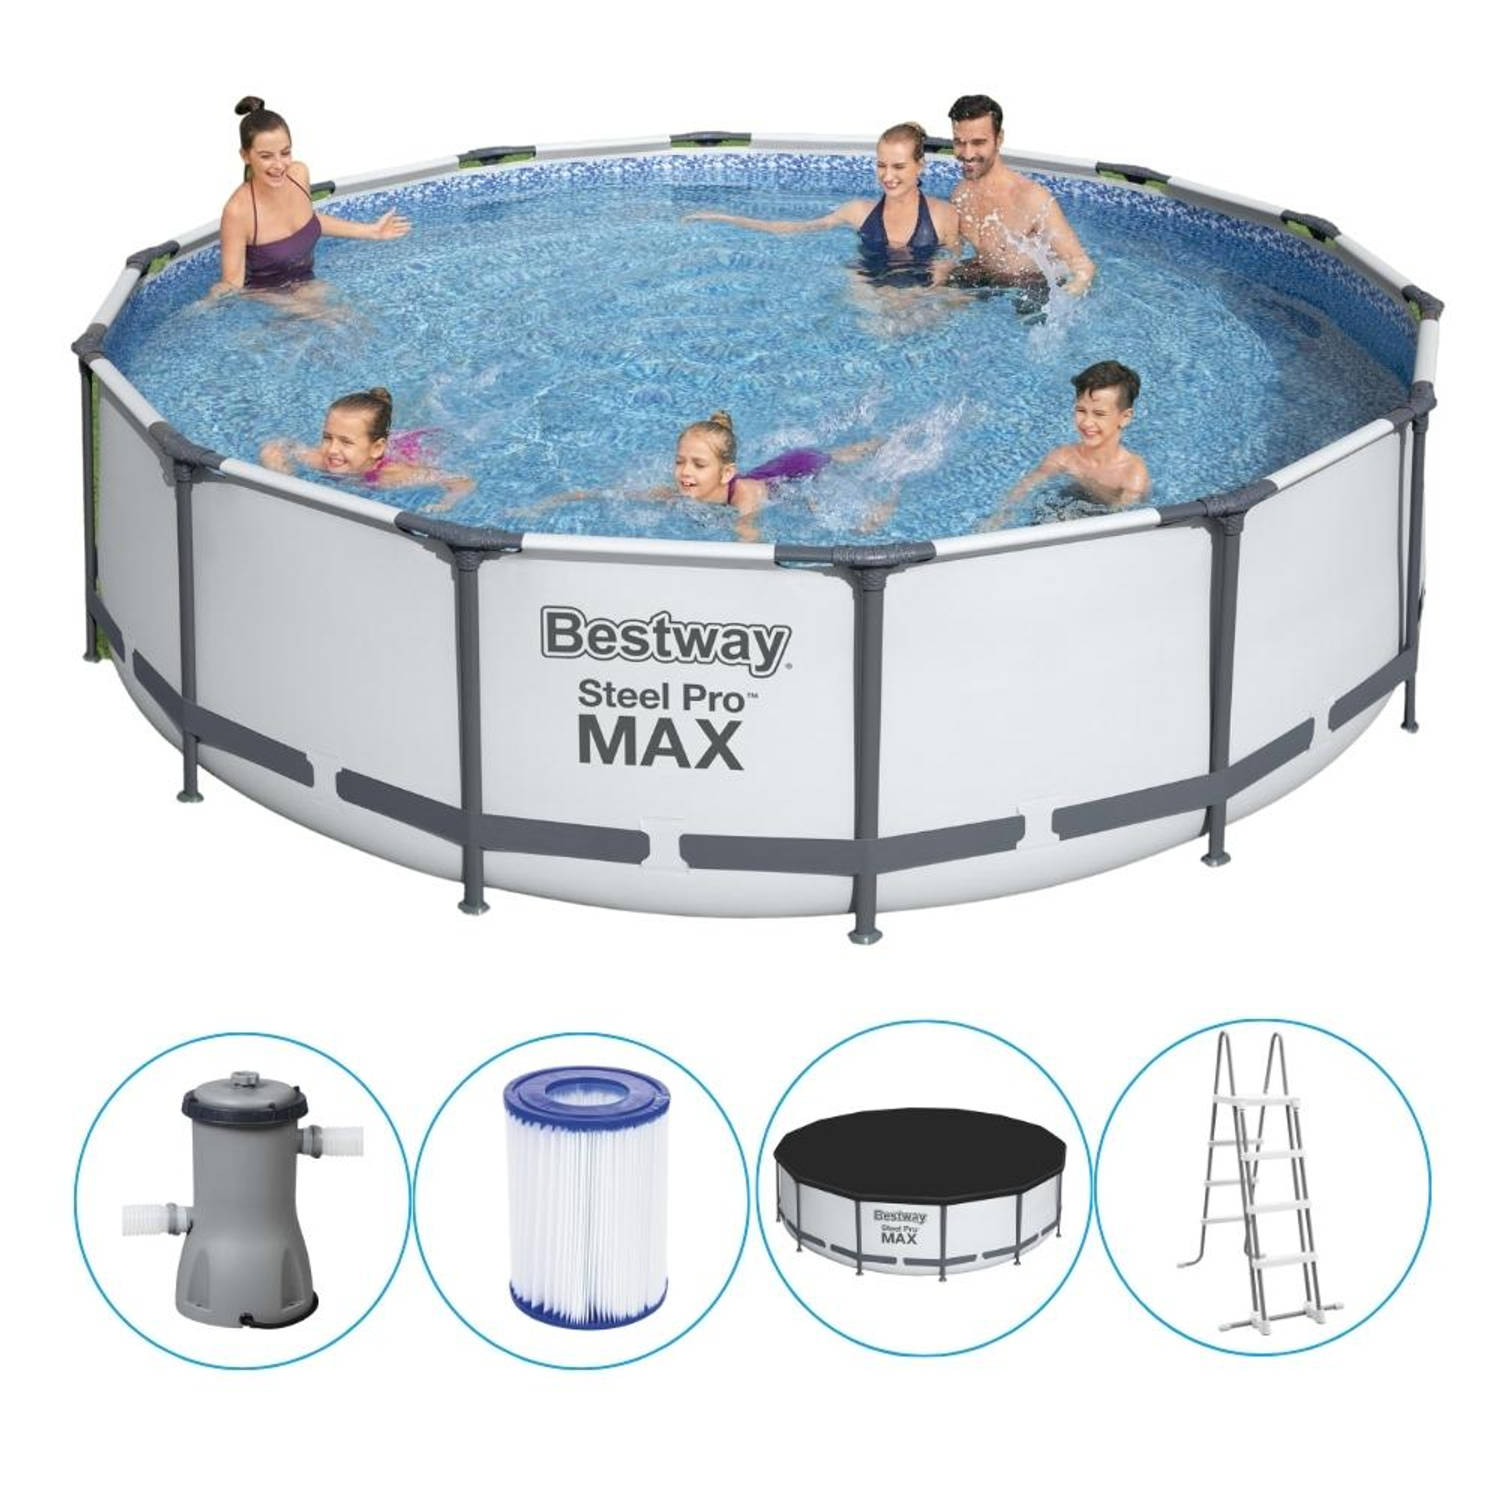 Bestway opzetzwembad steel pro max Ø427cm